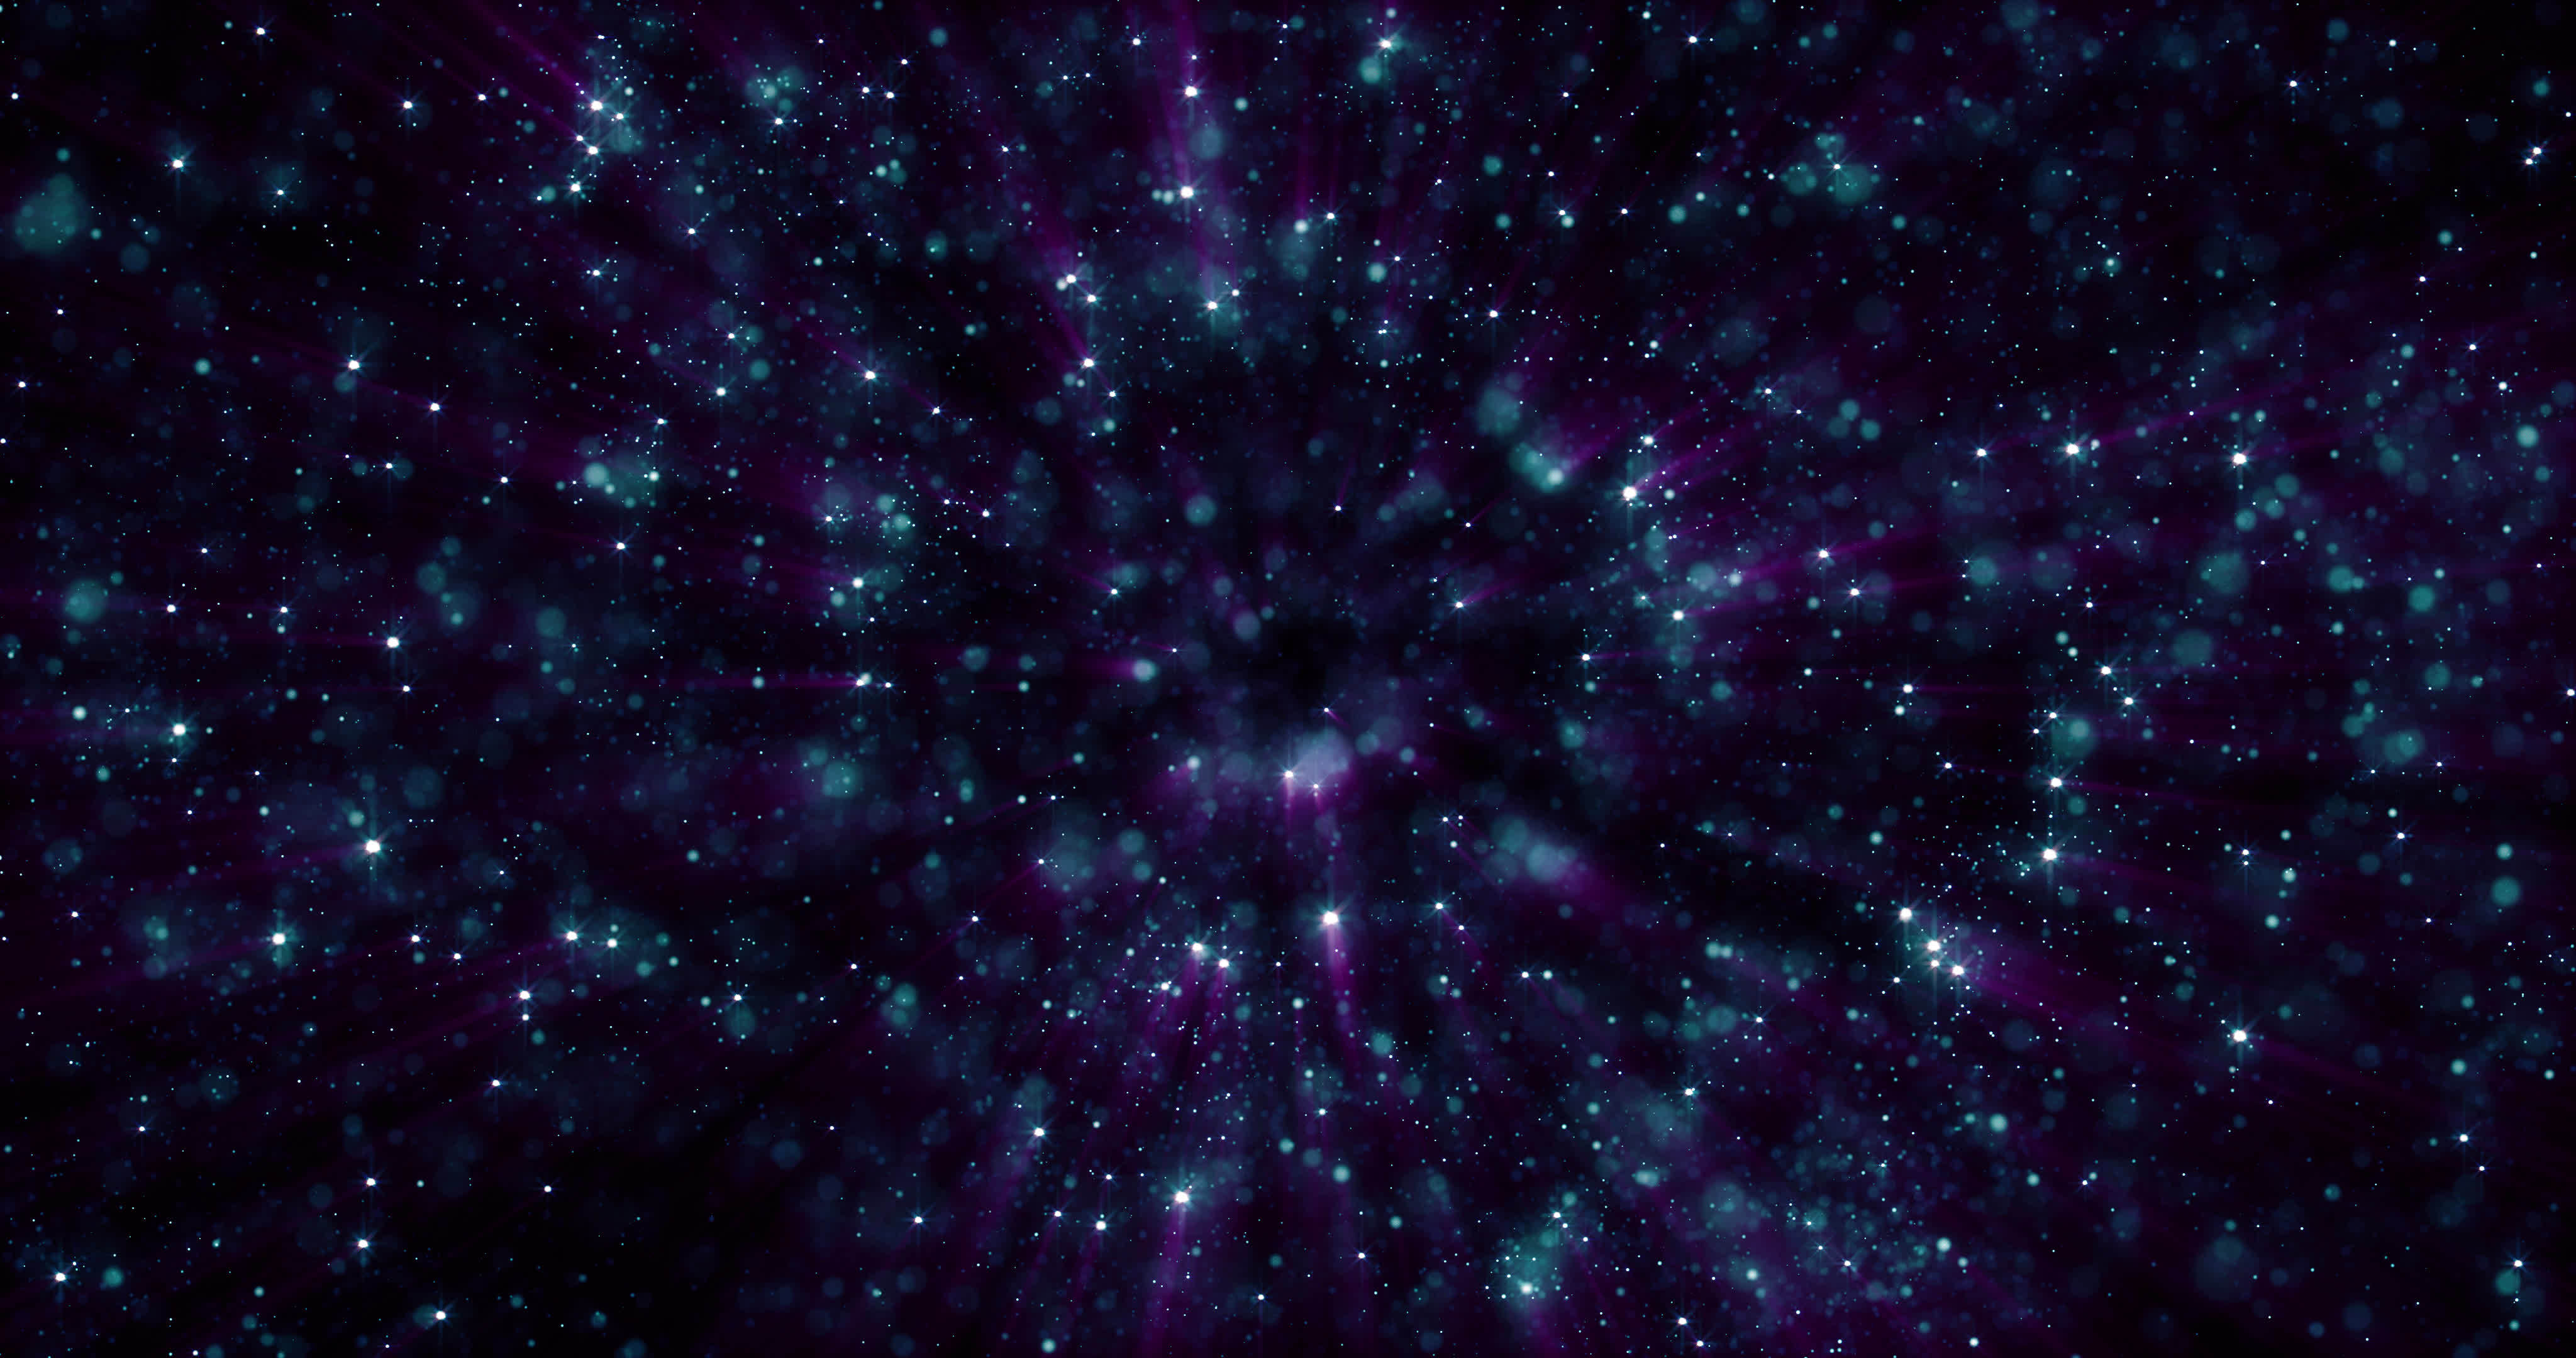 Hạt sao - Chiêm ngưỡng những Hạt sao lấp lánh như một màn sao băng rực rỡ, huyền bí đầy sức cuốn hút. Hãy đắm mình trong không gian vô tận của vũ trụ và nhìn những Hạt sao như những chú hạc bay lượn giữa đêm tối.